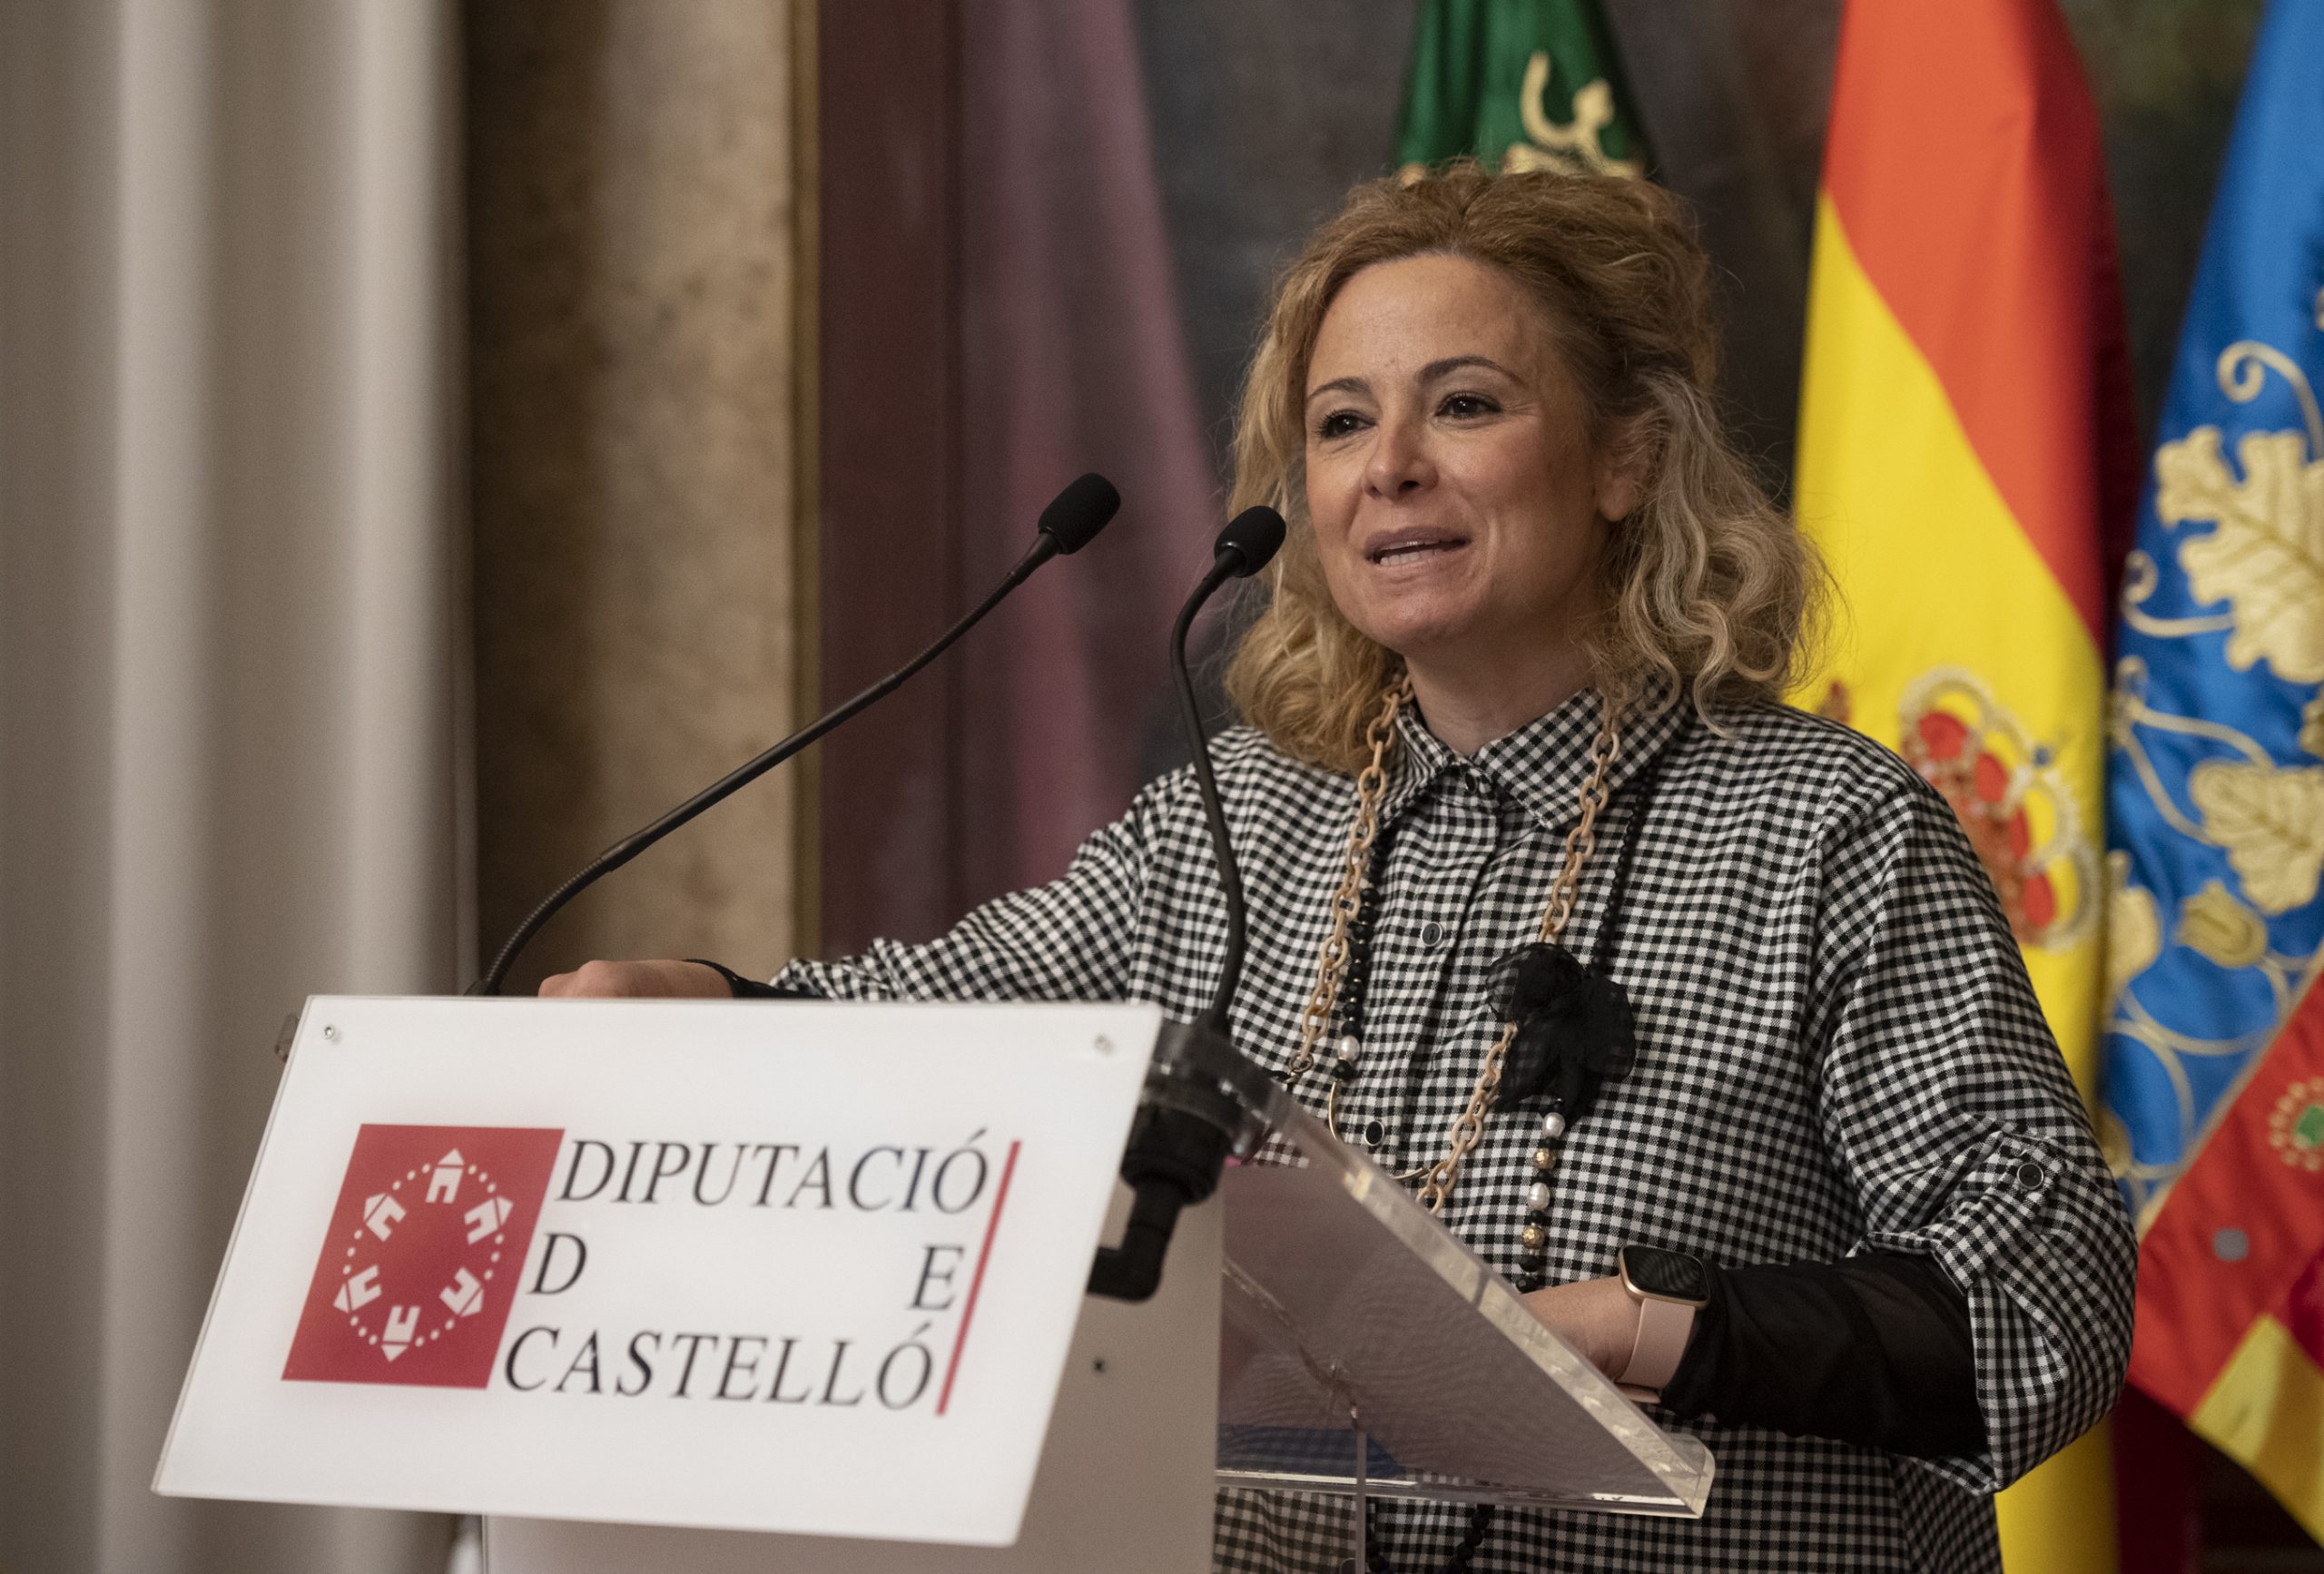 La Diputación de Castellón aprueba el reparto de 1,5 millones de euros entre 86 municipios de la provincia a través del Fondo de Cooperación para Municipios Turísticos